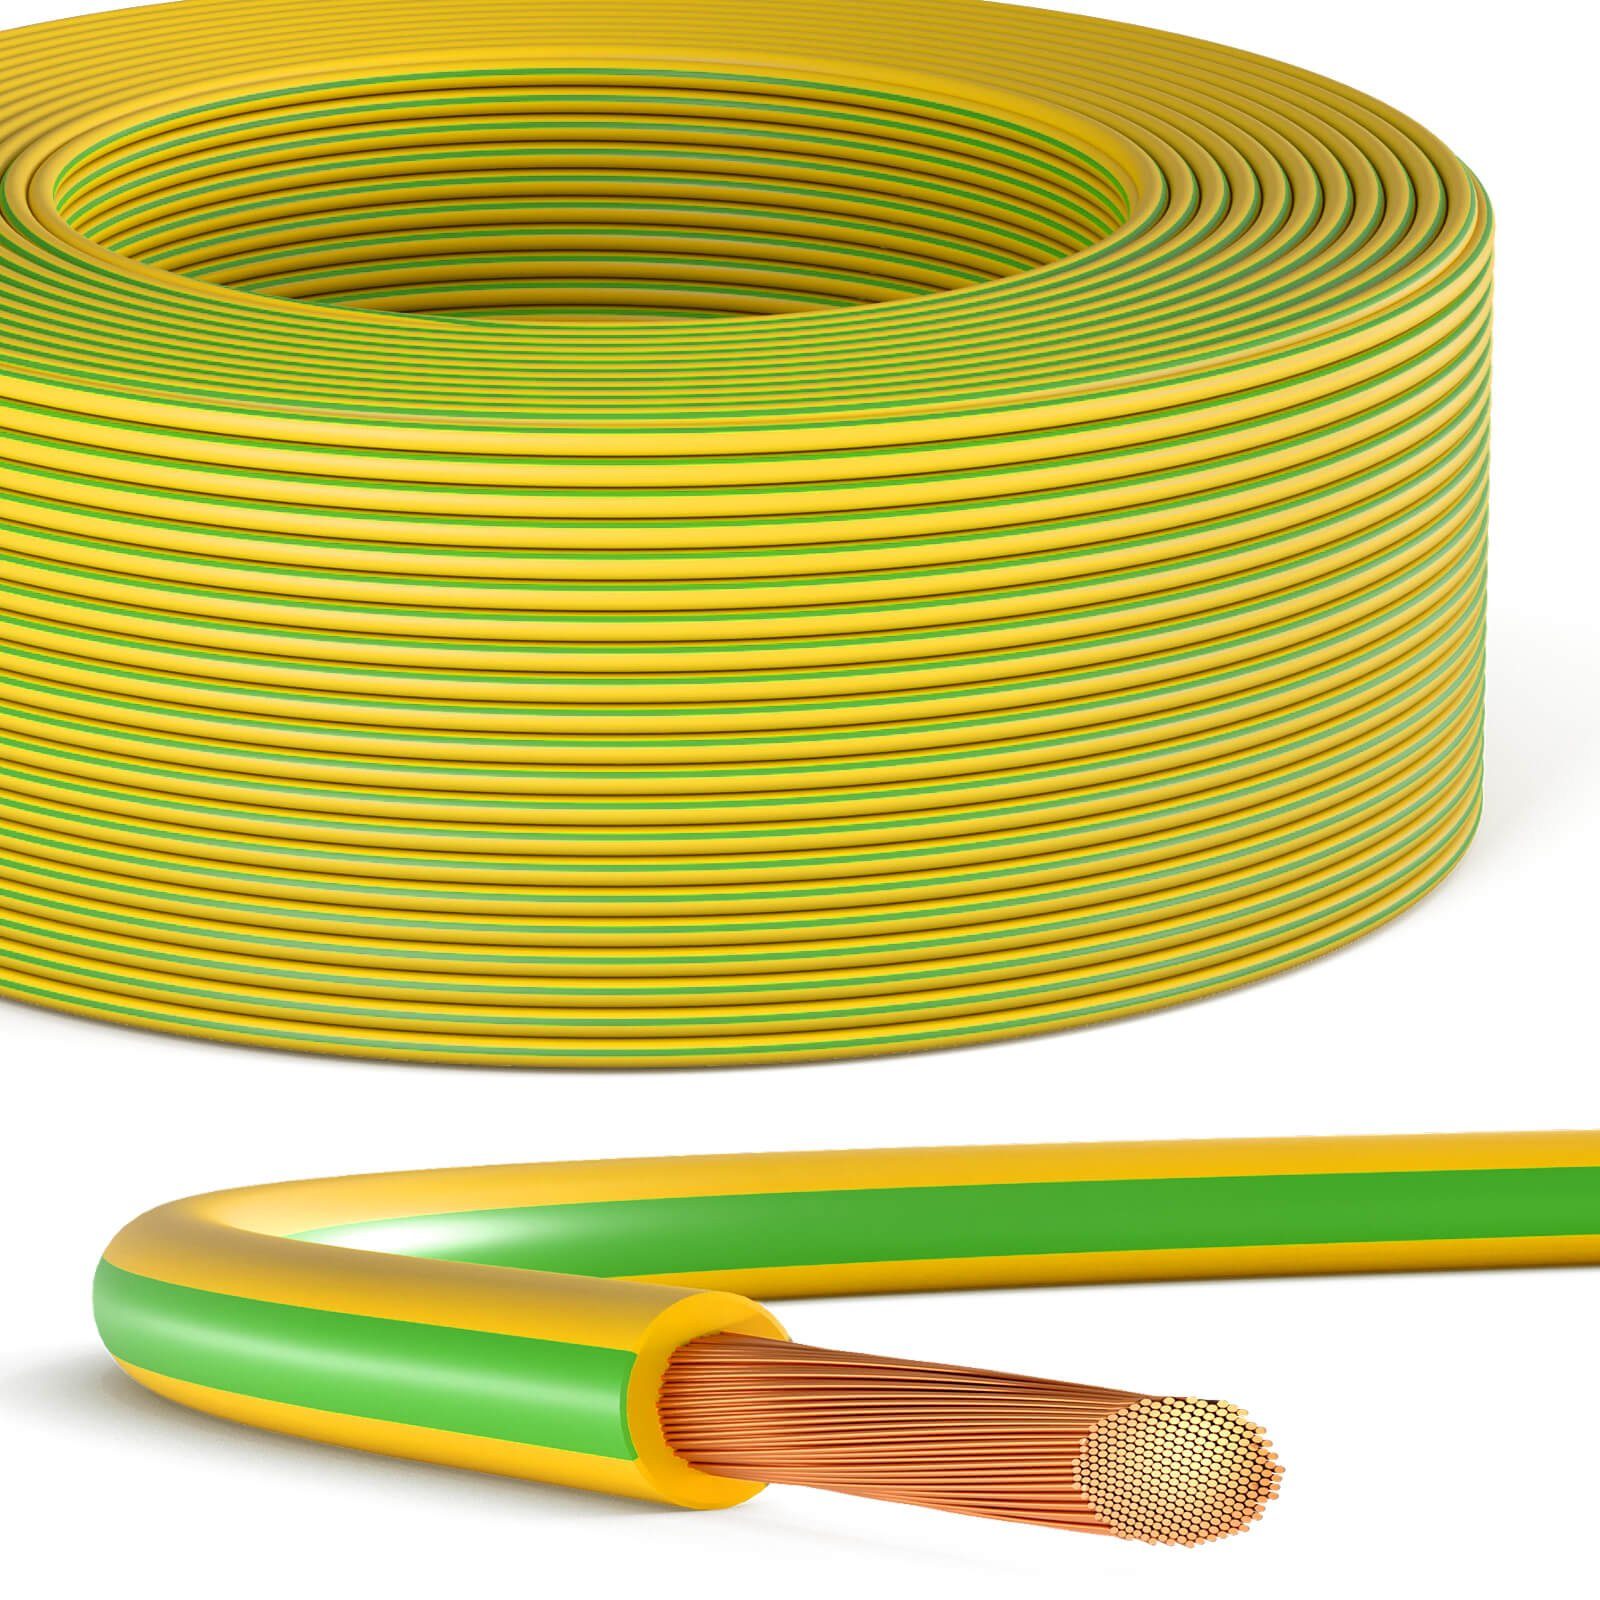 HB-DIGITAL Erdungskabel 10mm2 PVC Aderleitung H07V-K flexibles Kabel grün-gelb Stromkabel, (500 cm), flexible Design, PVC-Isoliermantel